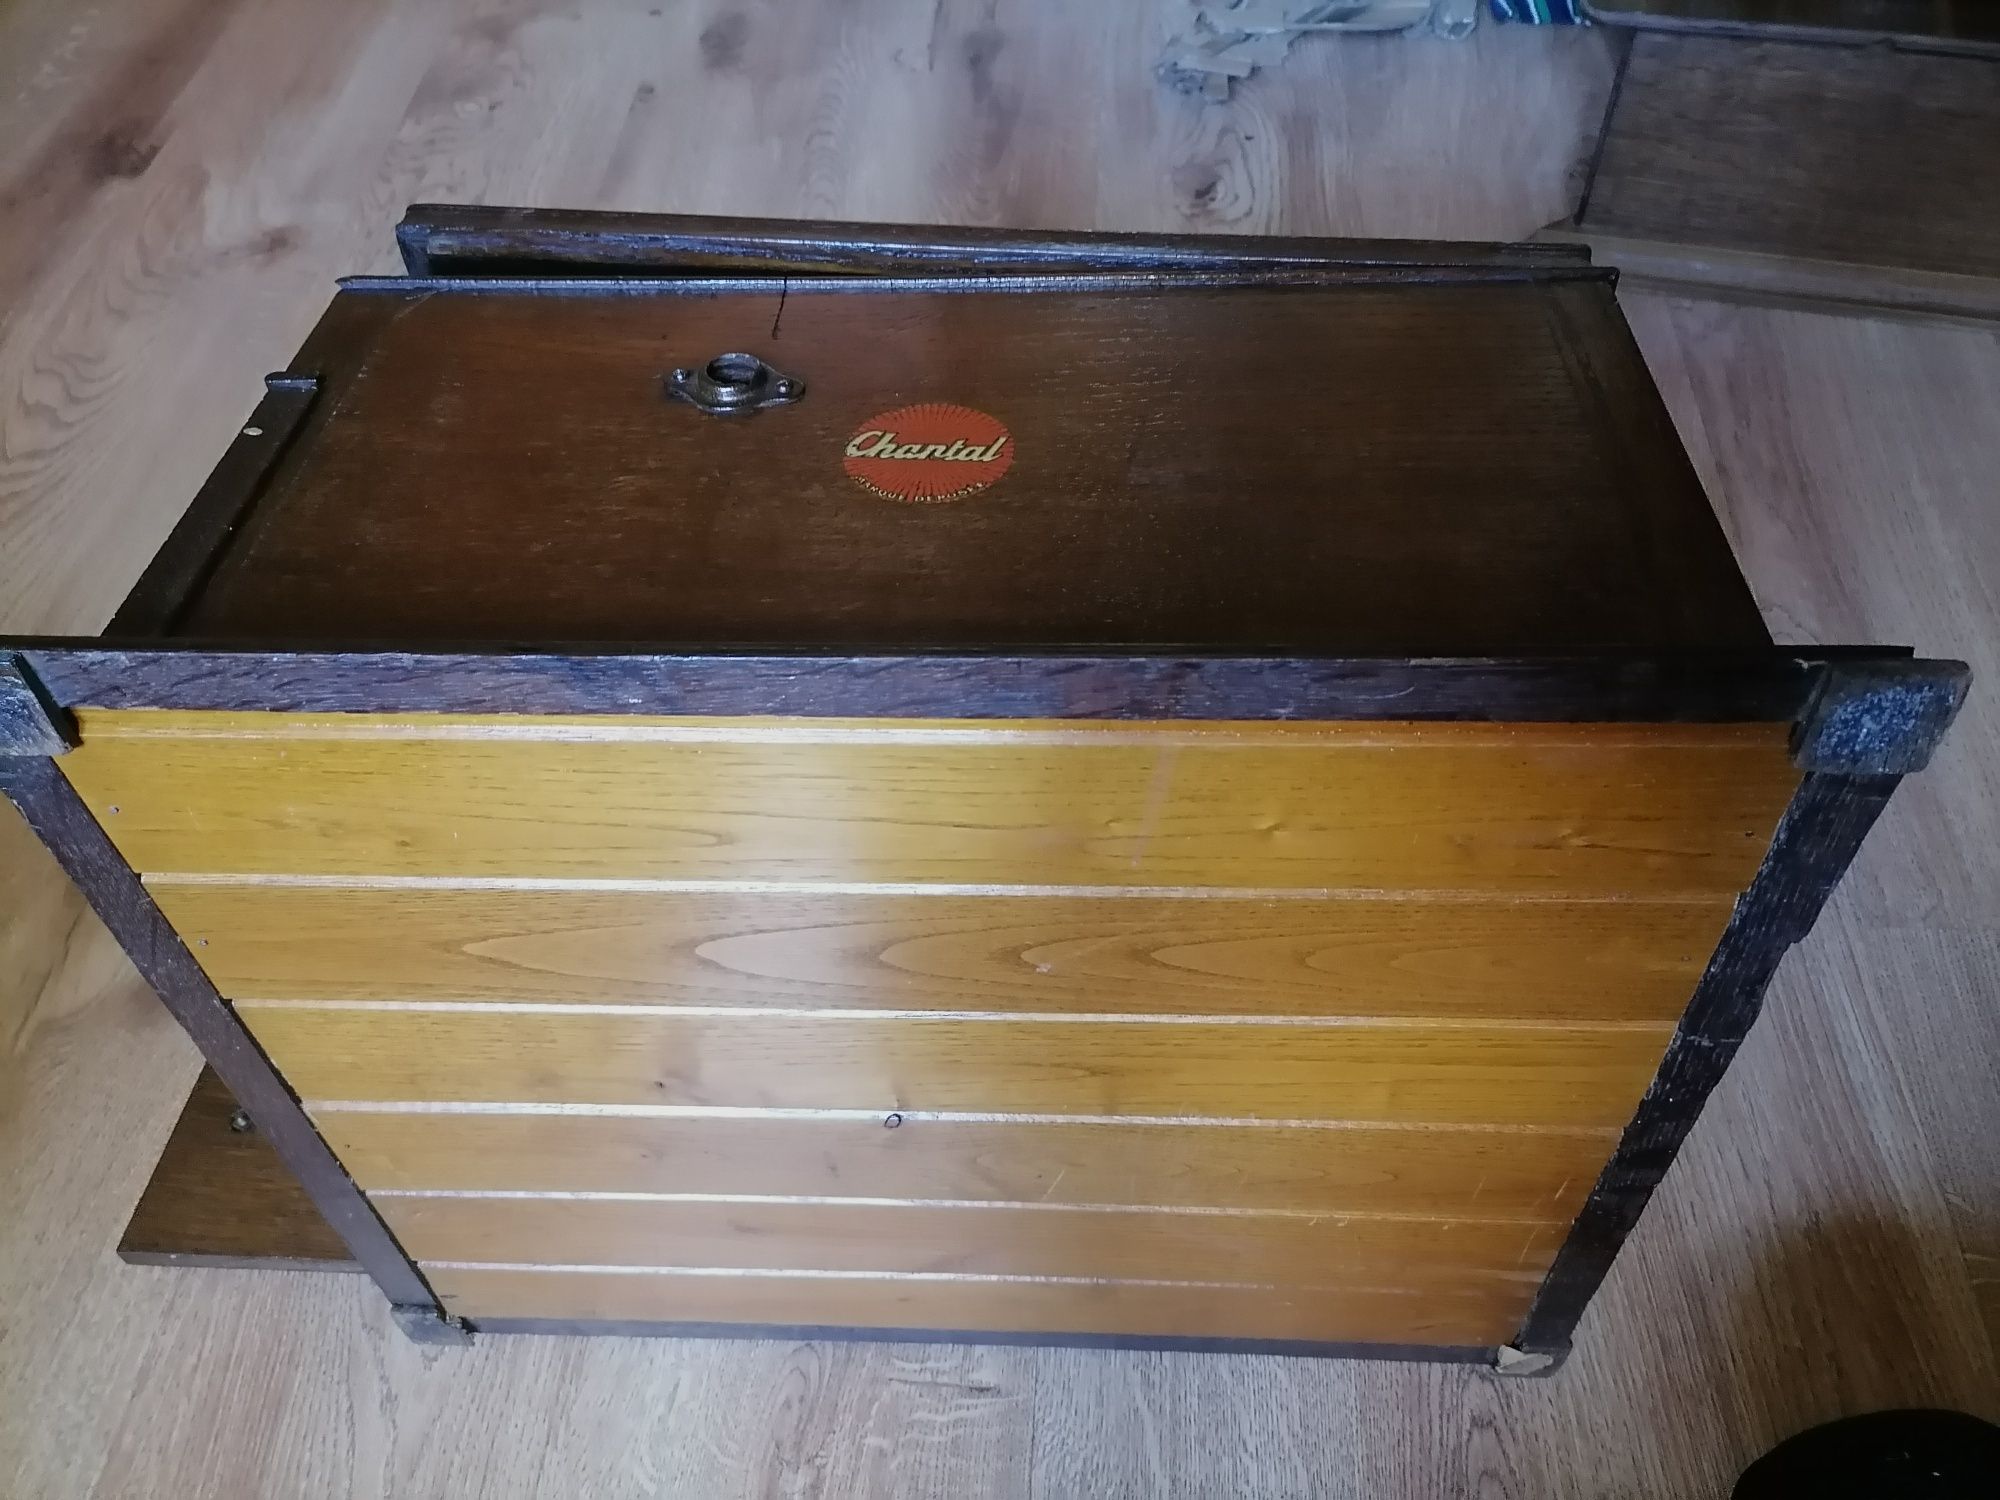 Stary unikatowy gramofon - patefon z lat 30 tych